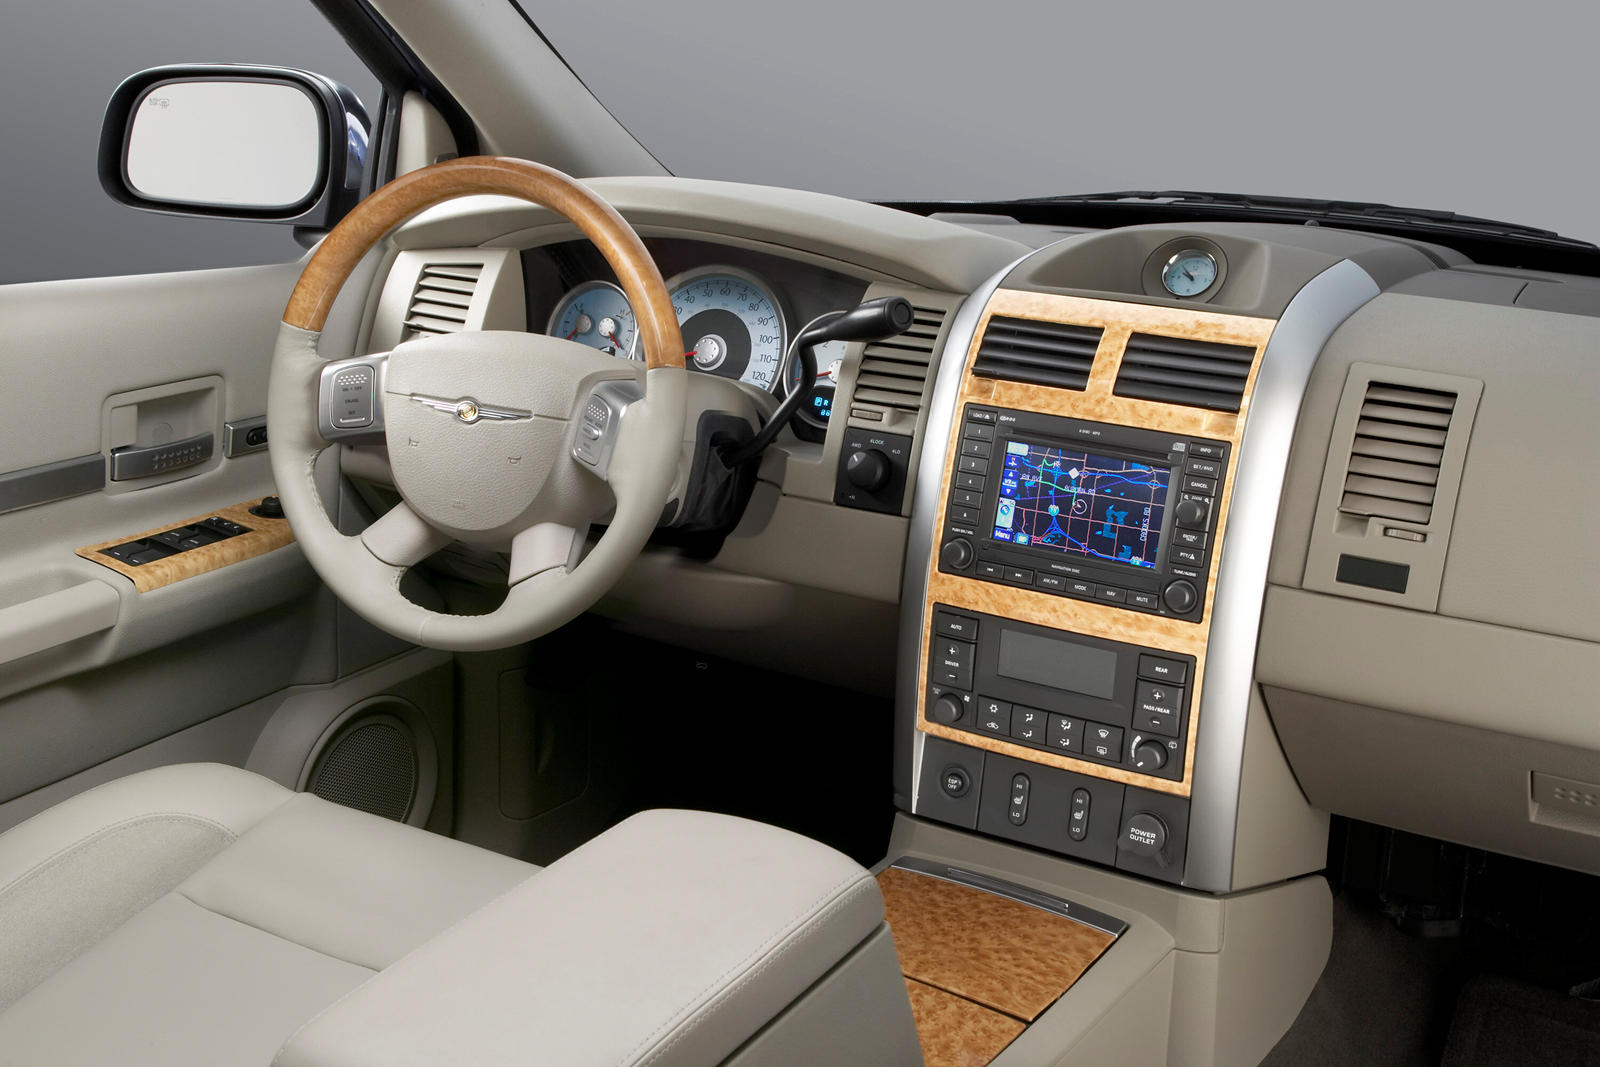 2009 Chrysler Aspen Dashboard